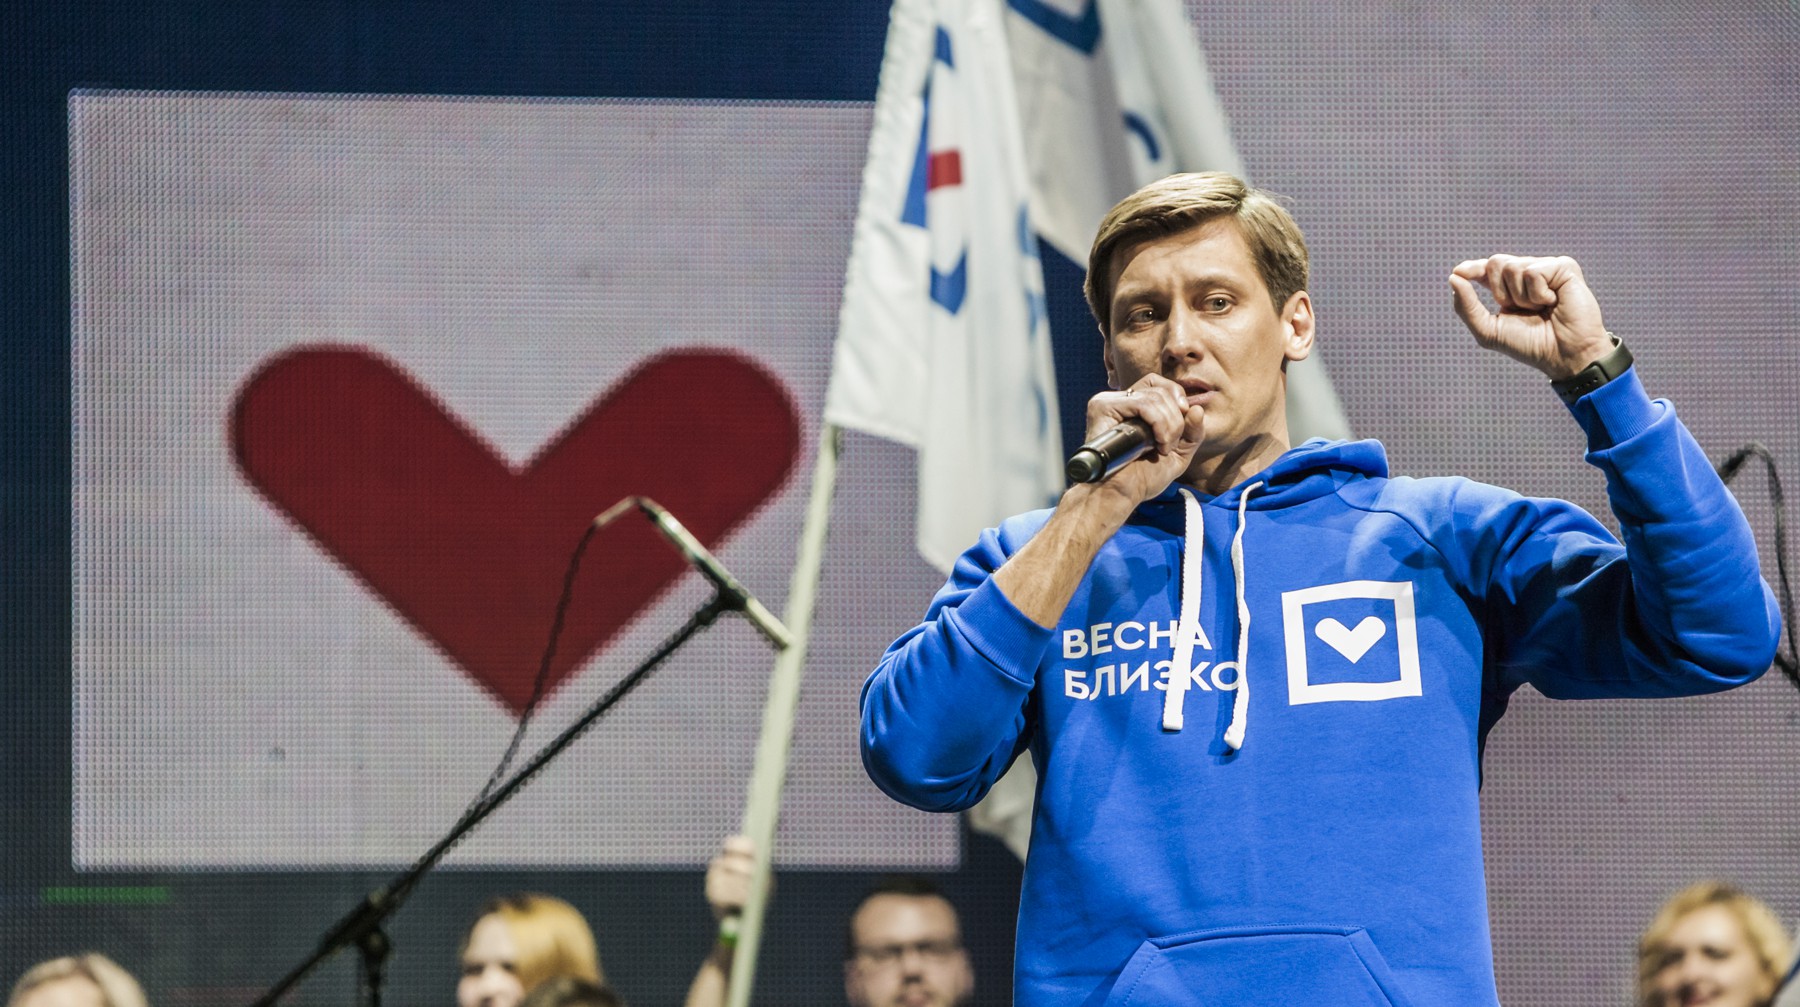 Dailystorm - «Дело не в Яшине». Почему Навальный не хочет видеть Дмитрия Гудкова единым кандидатом от оппозиции на выборах мэра Москвы